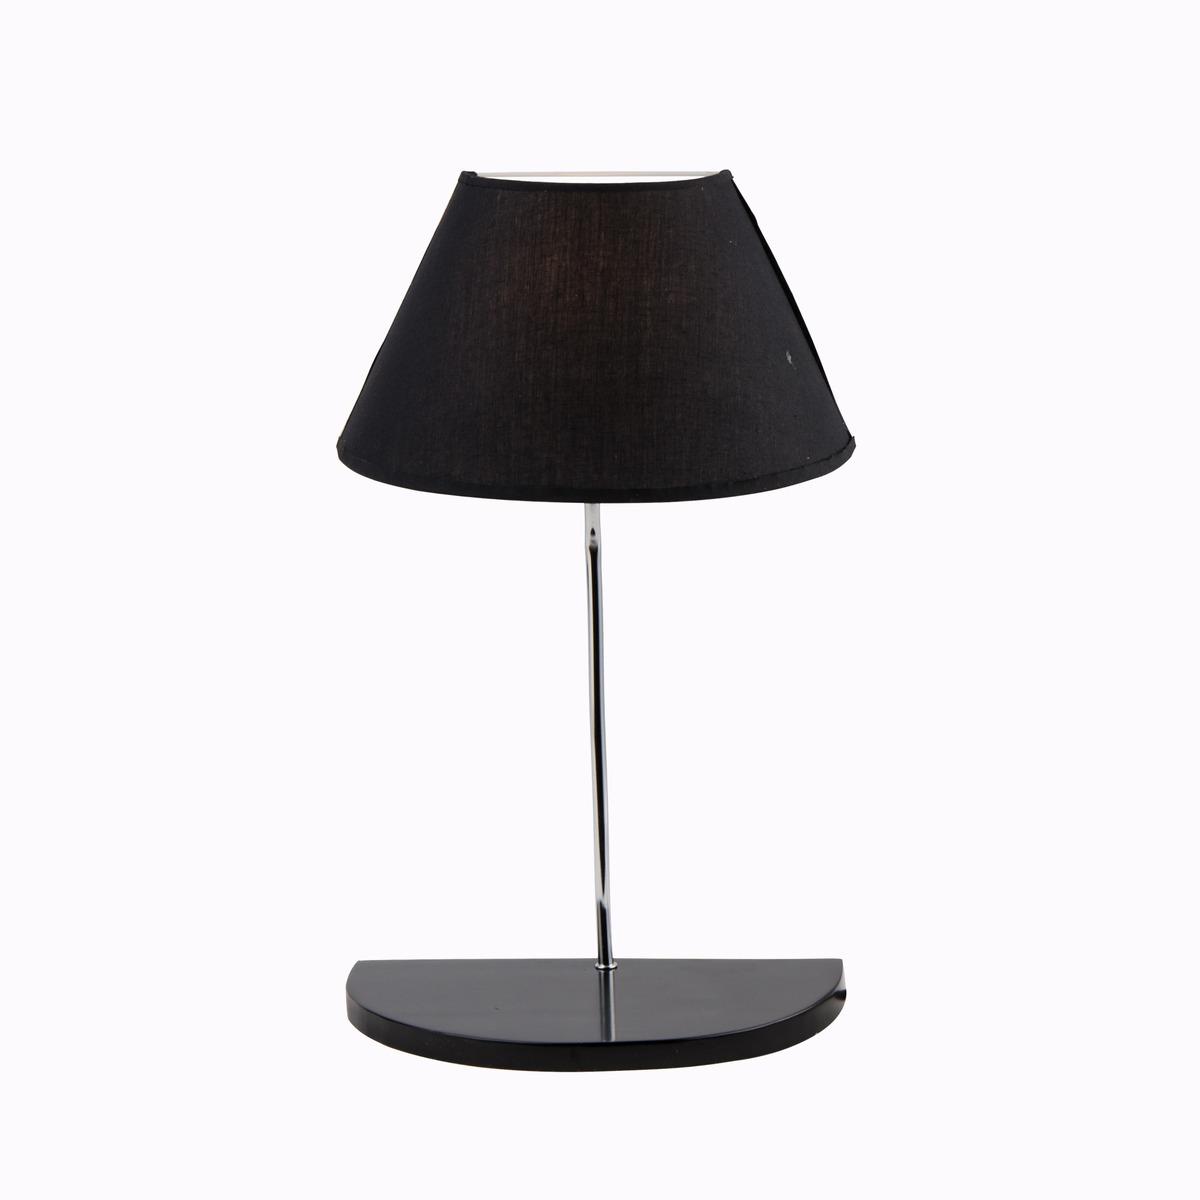 Lampe design avec tablette - 30 x 18 x H 48 cm - Noir